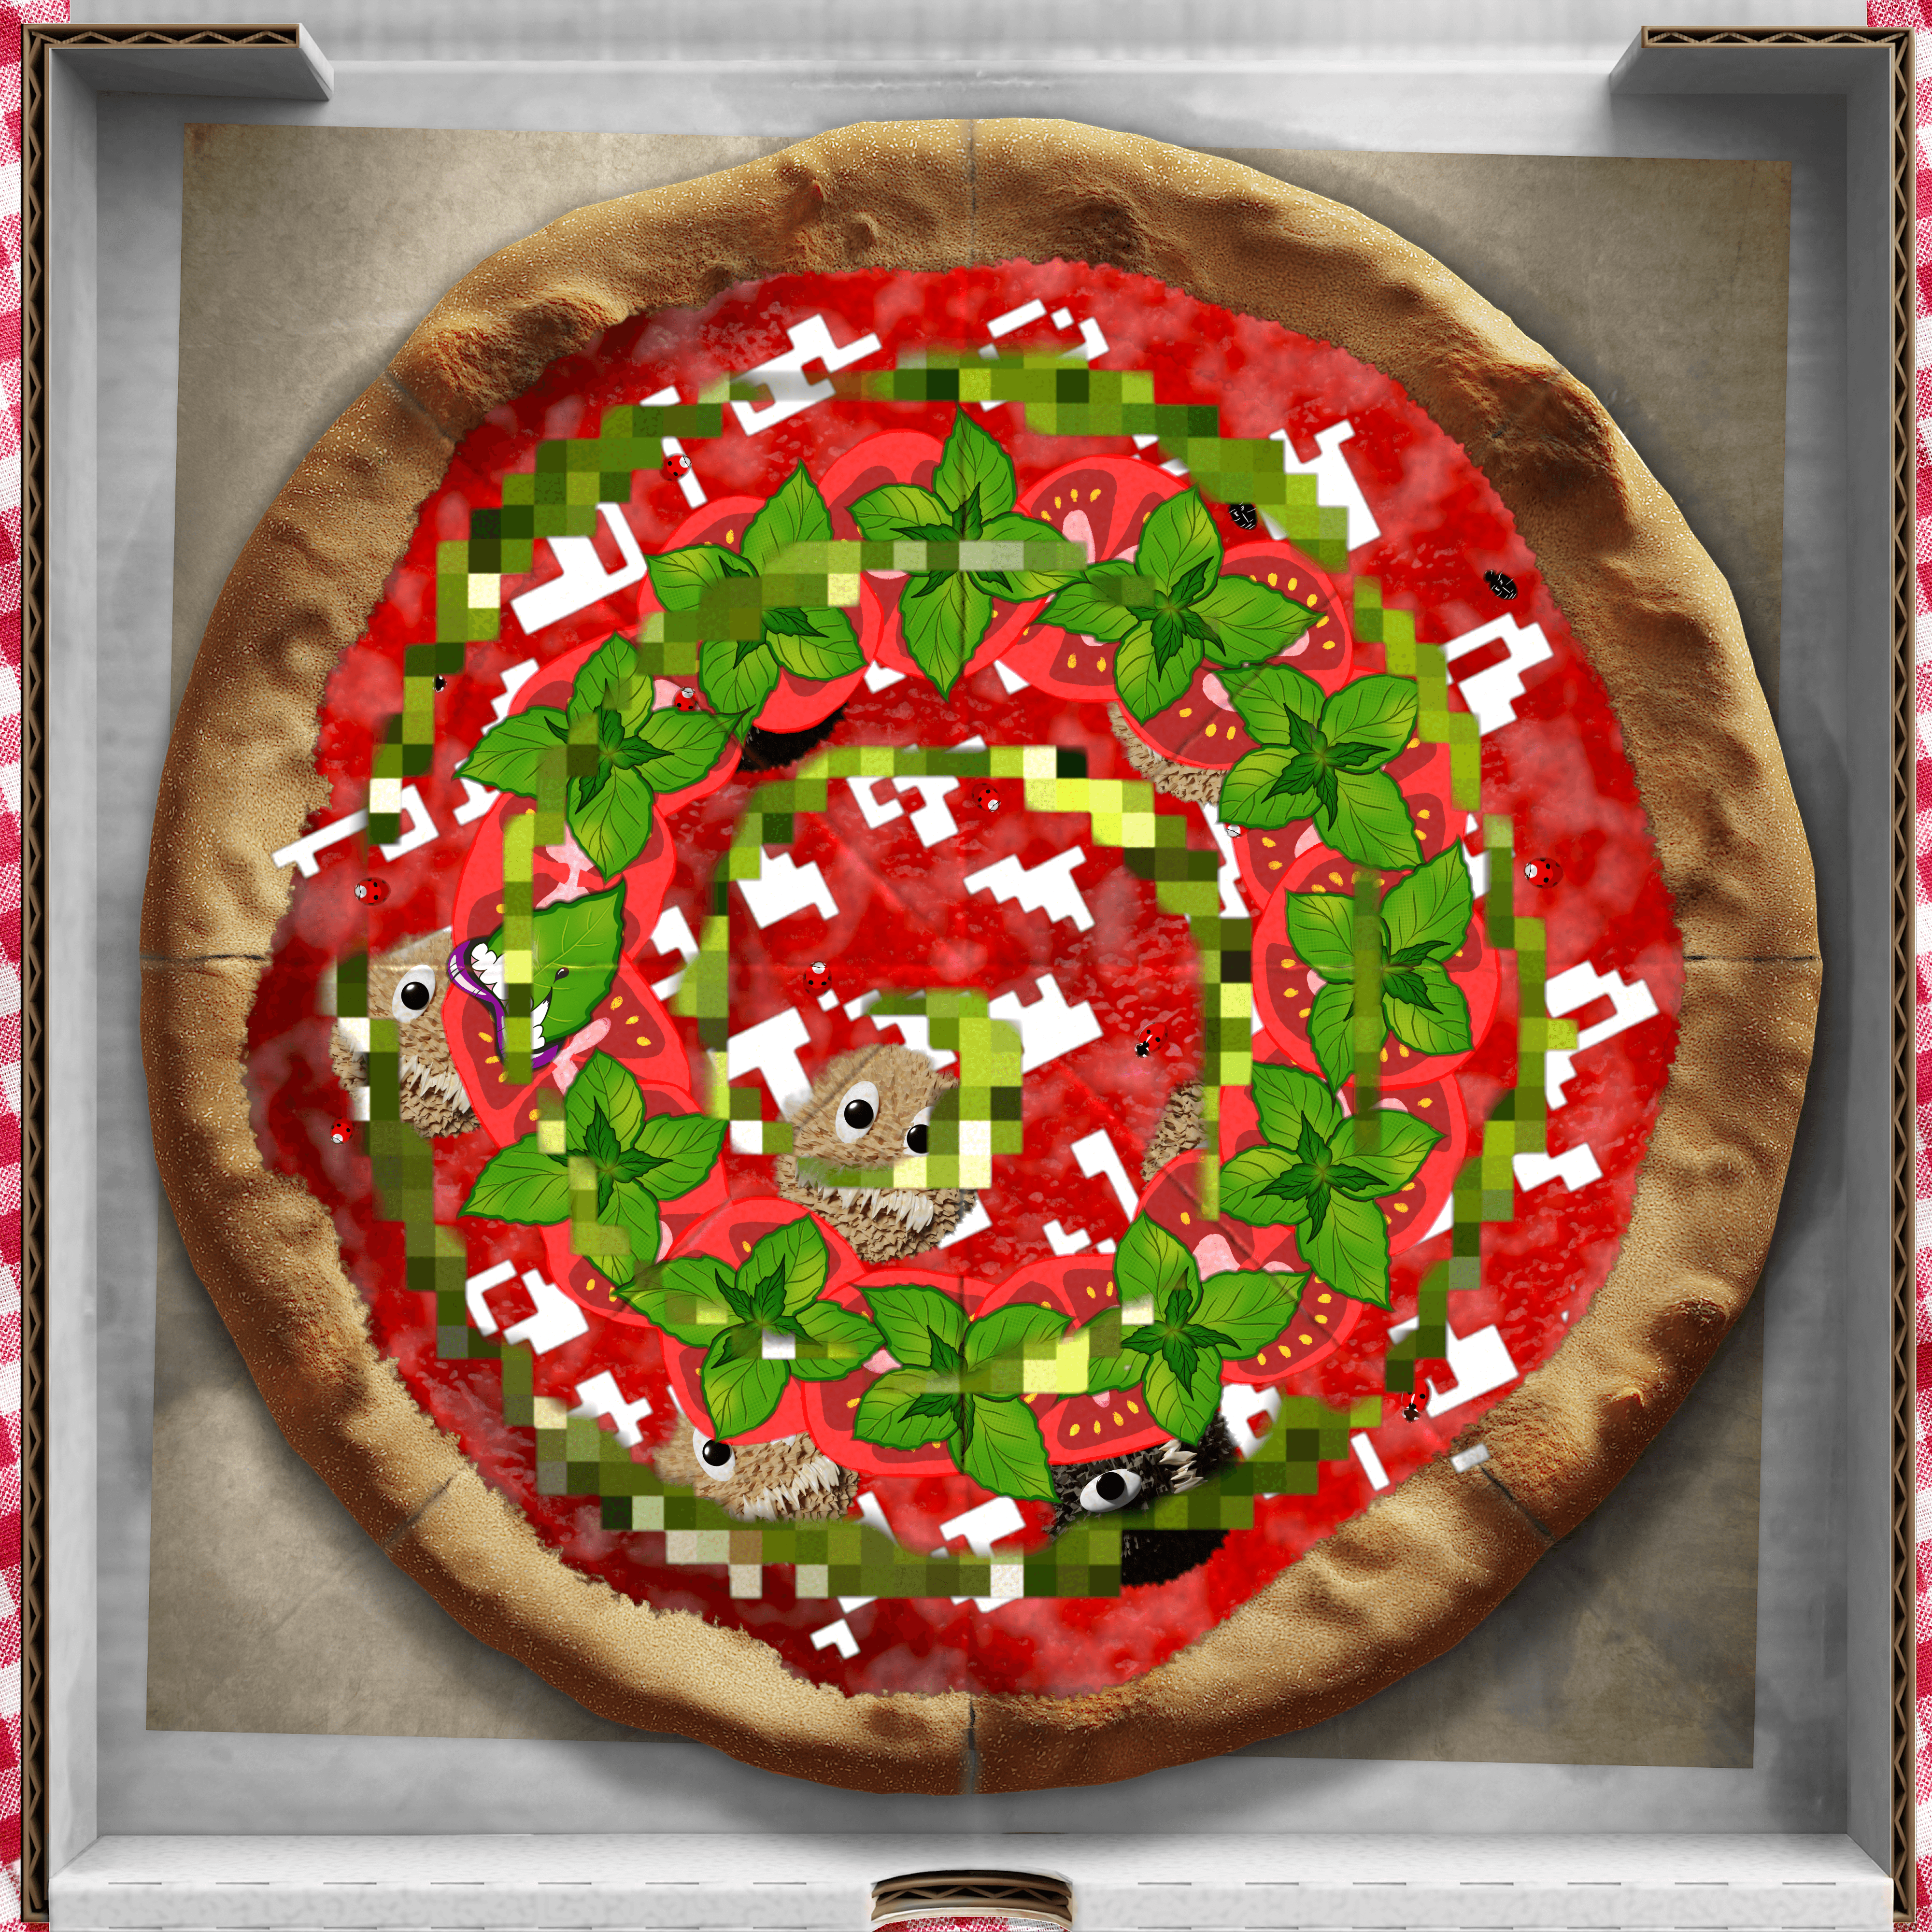 Rare Pizza #841